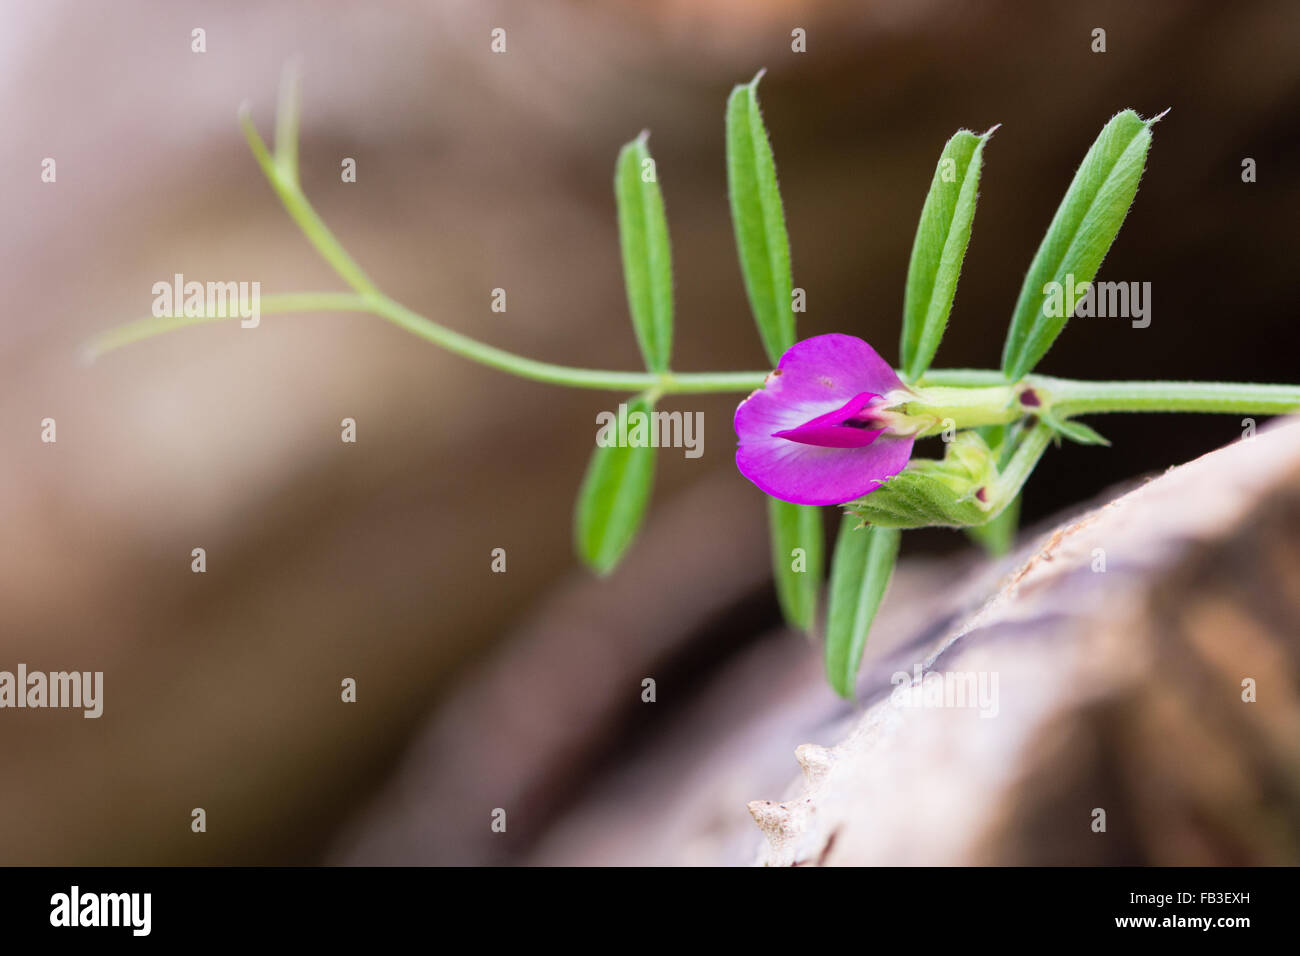 Vesce commune (Vicia sativa) en fleurs. Un membre de la famille des pois (Fabaceae), vu ici en culture des fleurs sur du bois Banque D'Images